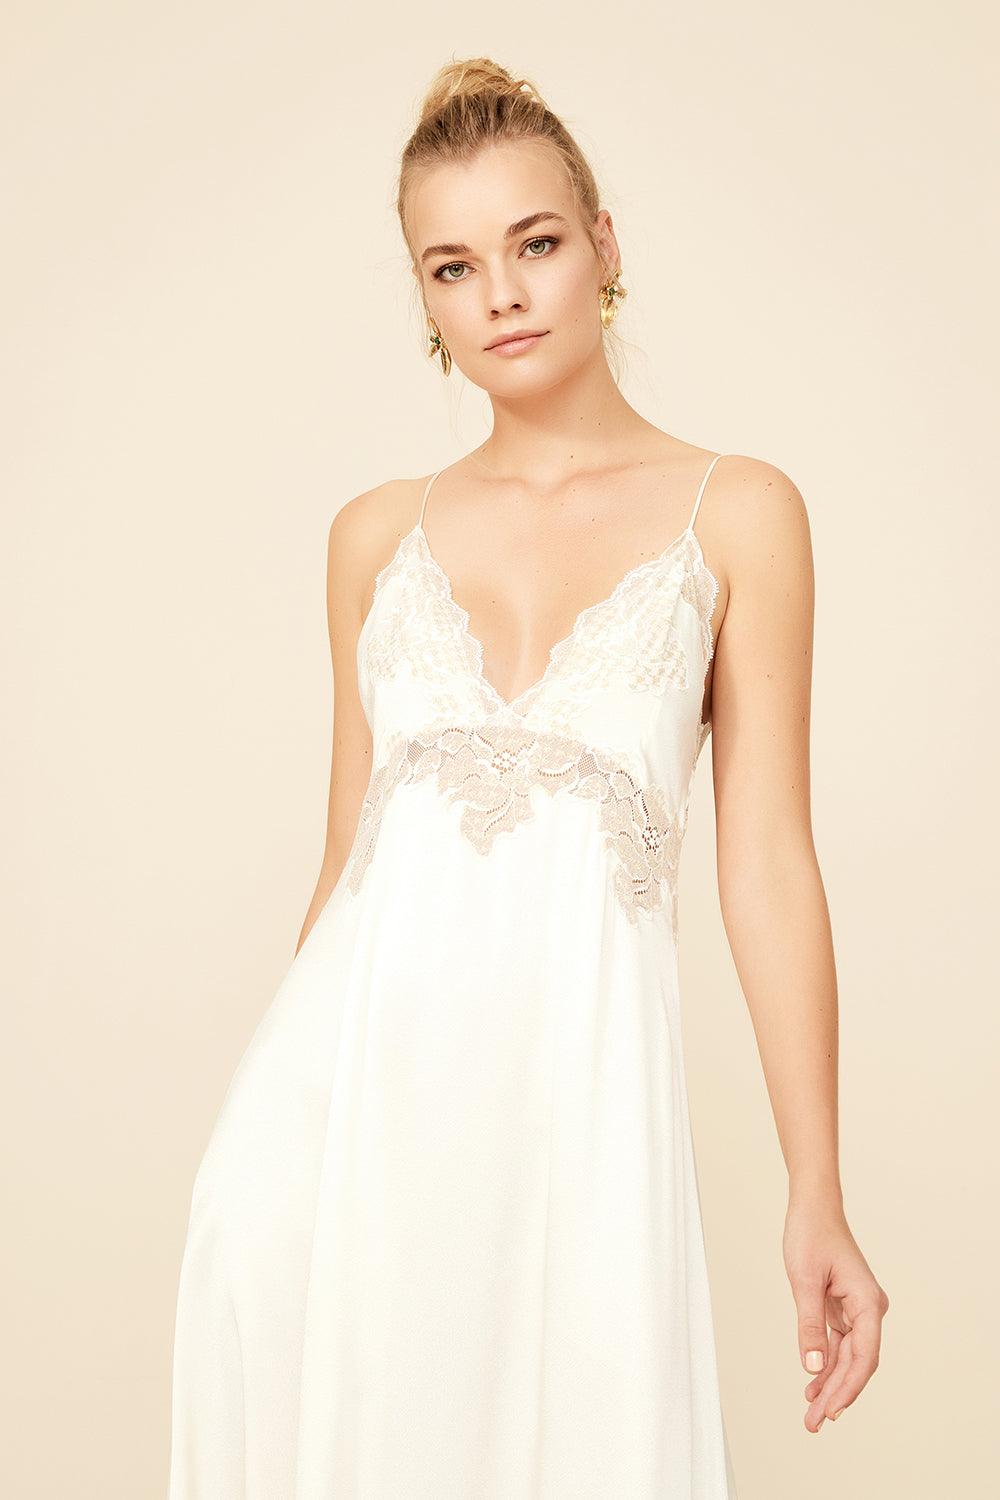 Bridal Pyjama Sets, Robes & Nightgowns – Bocan